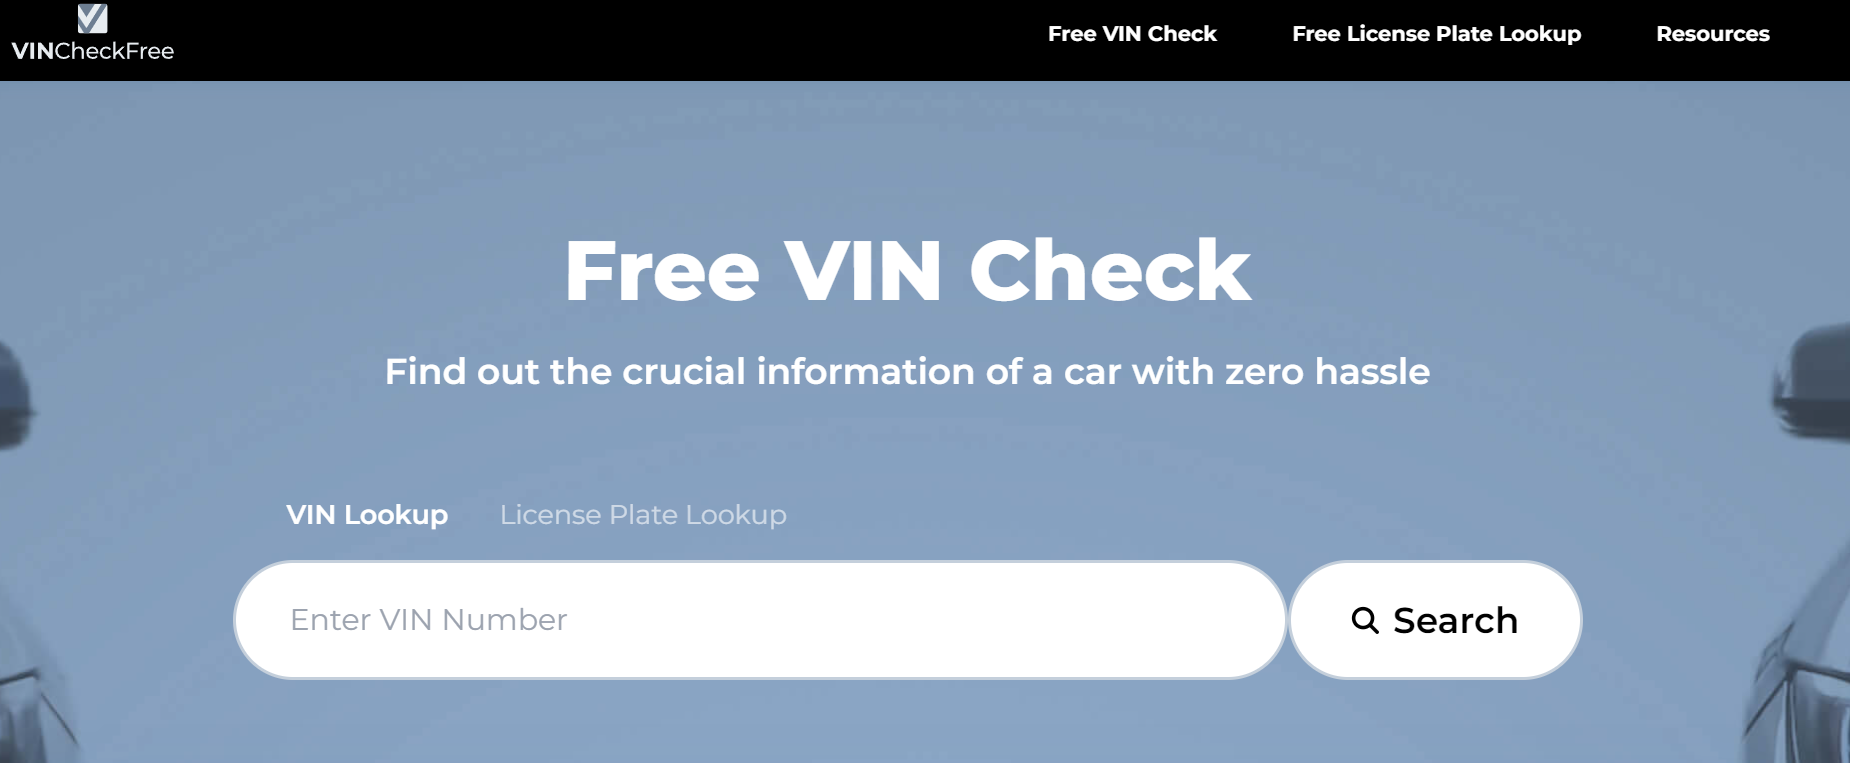 VIN Check Free Review